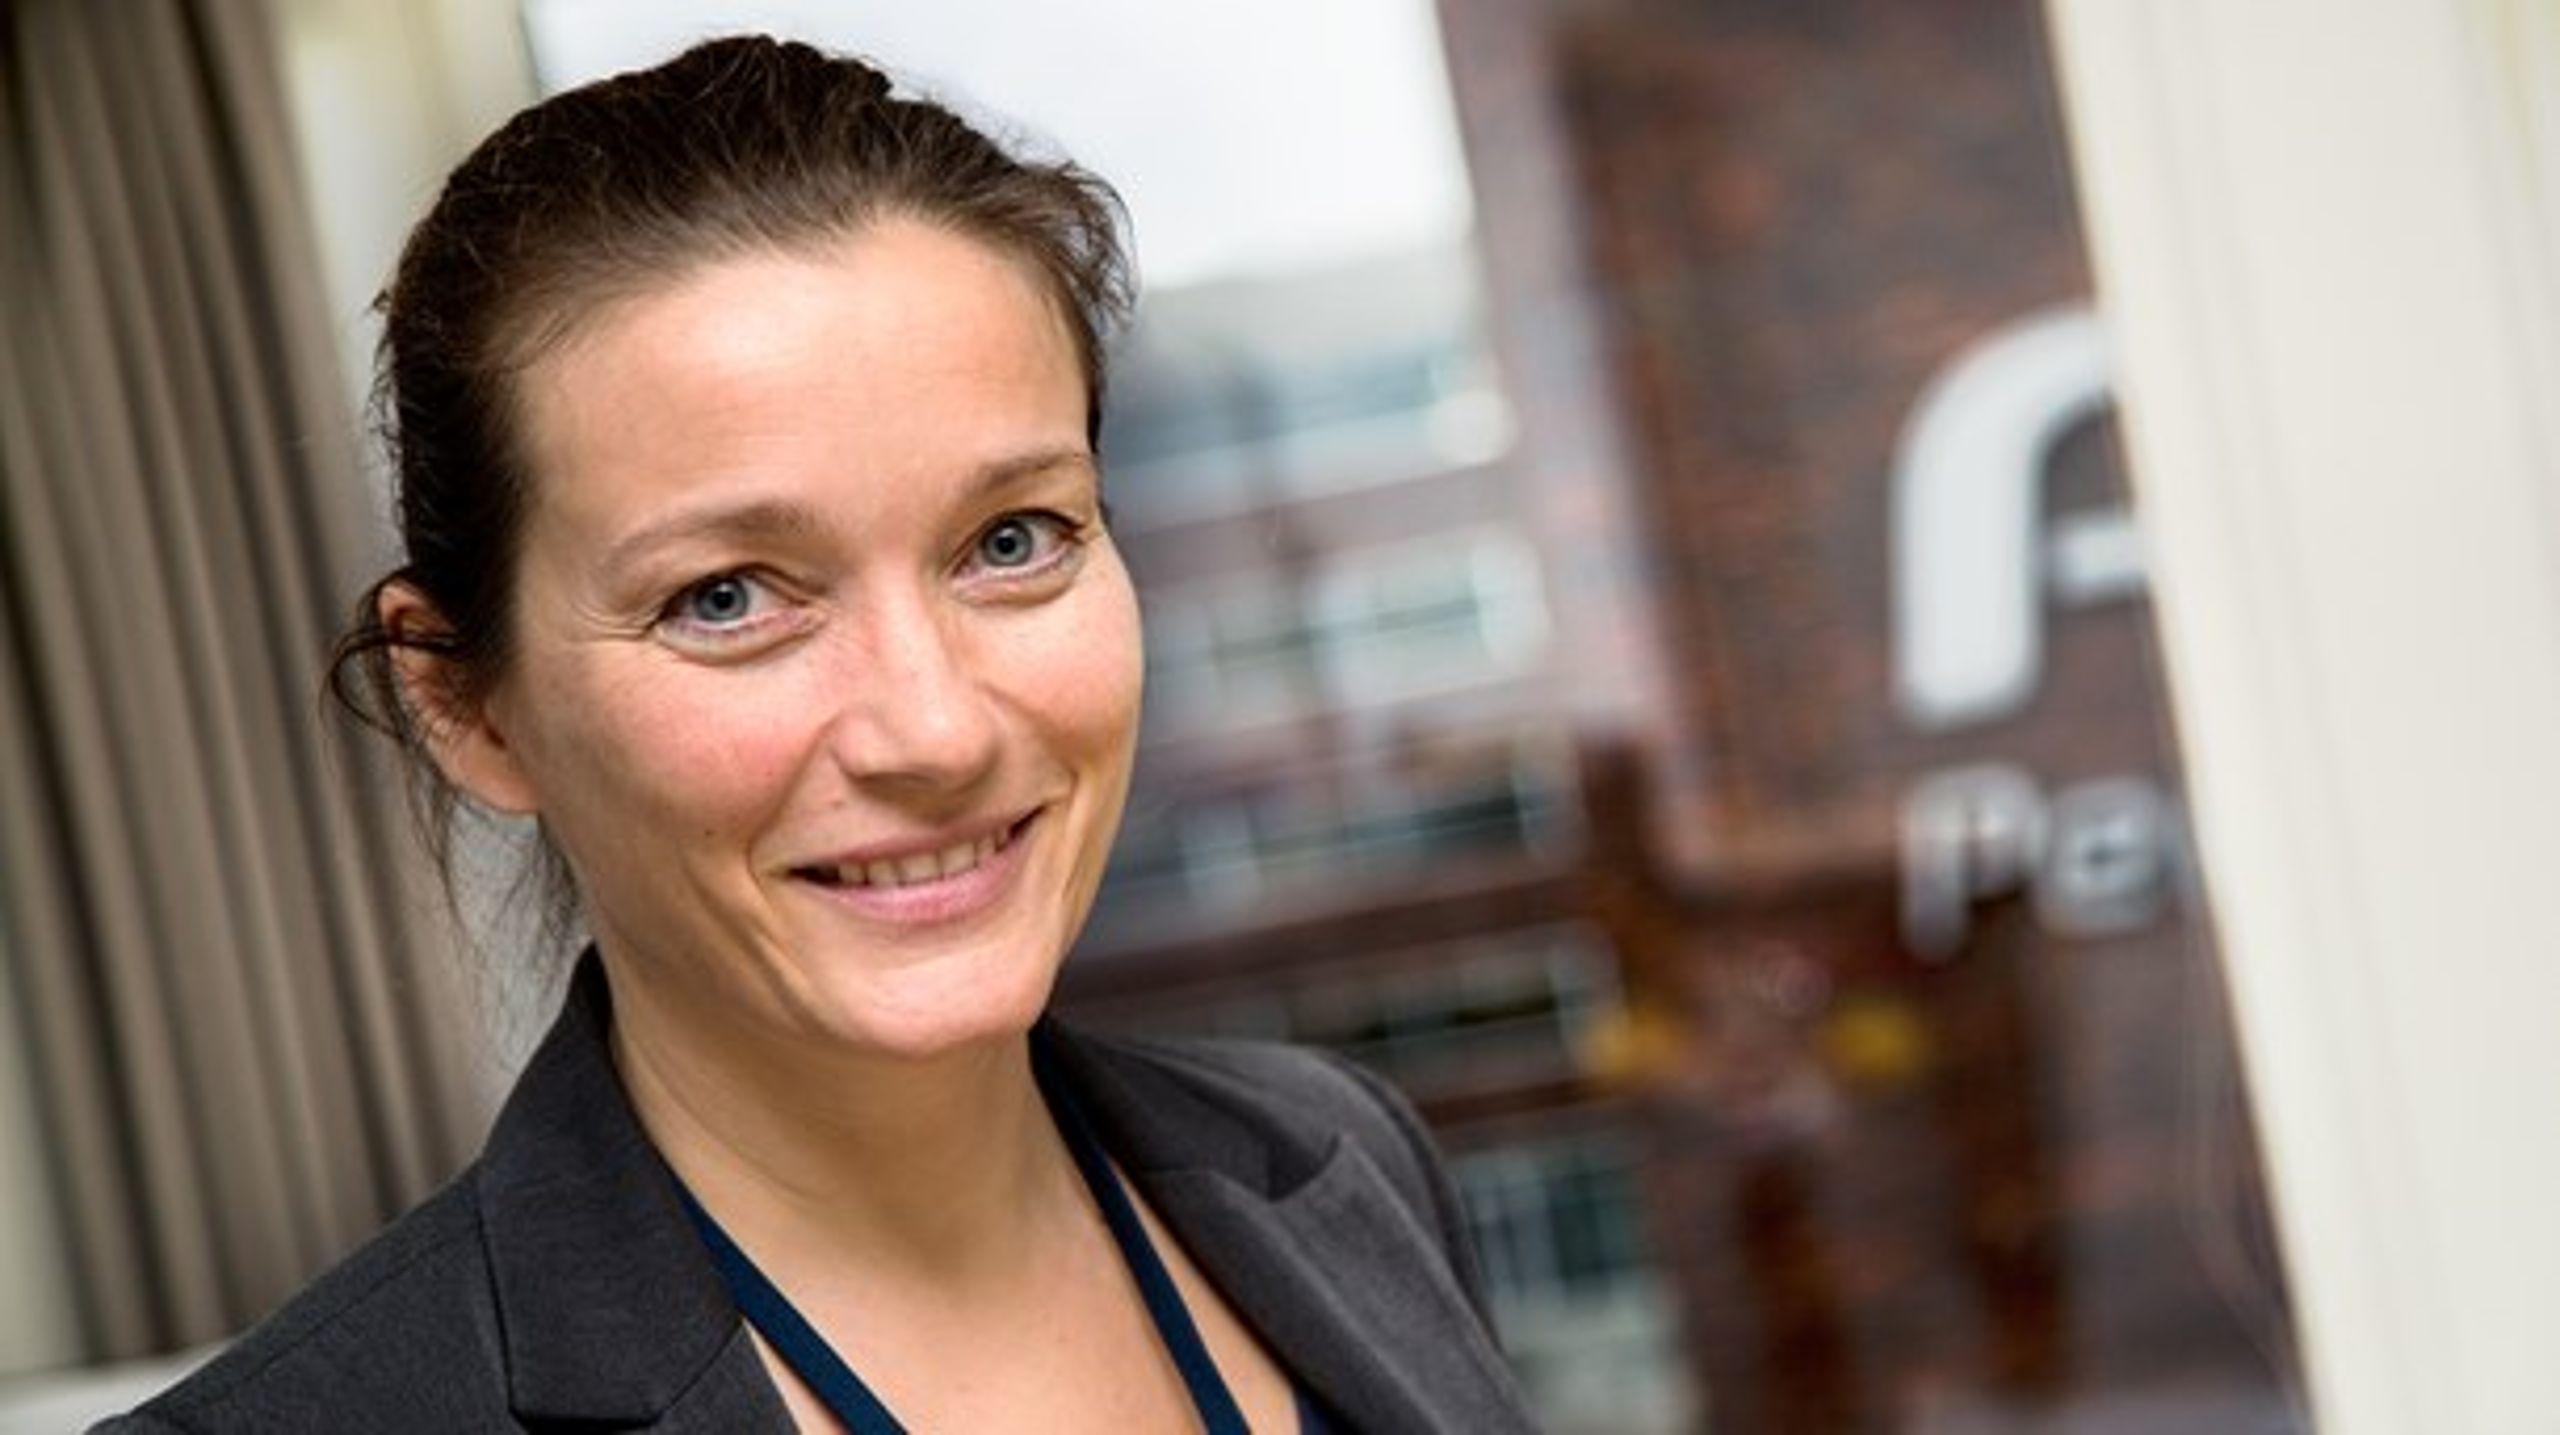 Fra 15. august er Ingeborg Gade ny direktør i Ankestyrelsen.